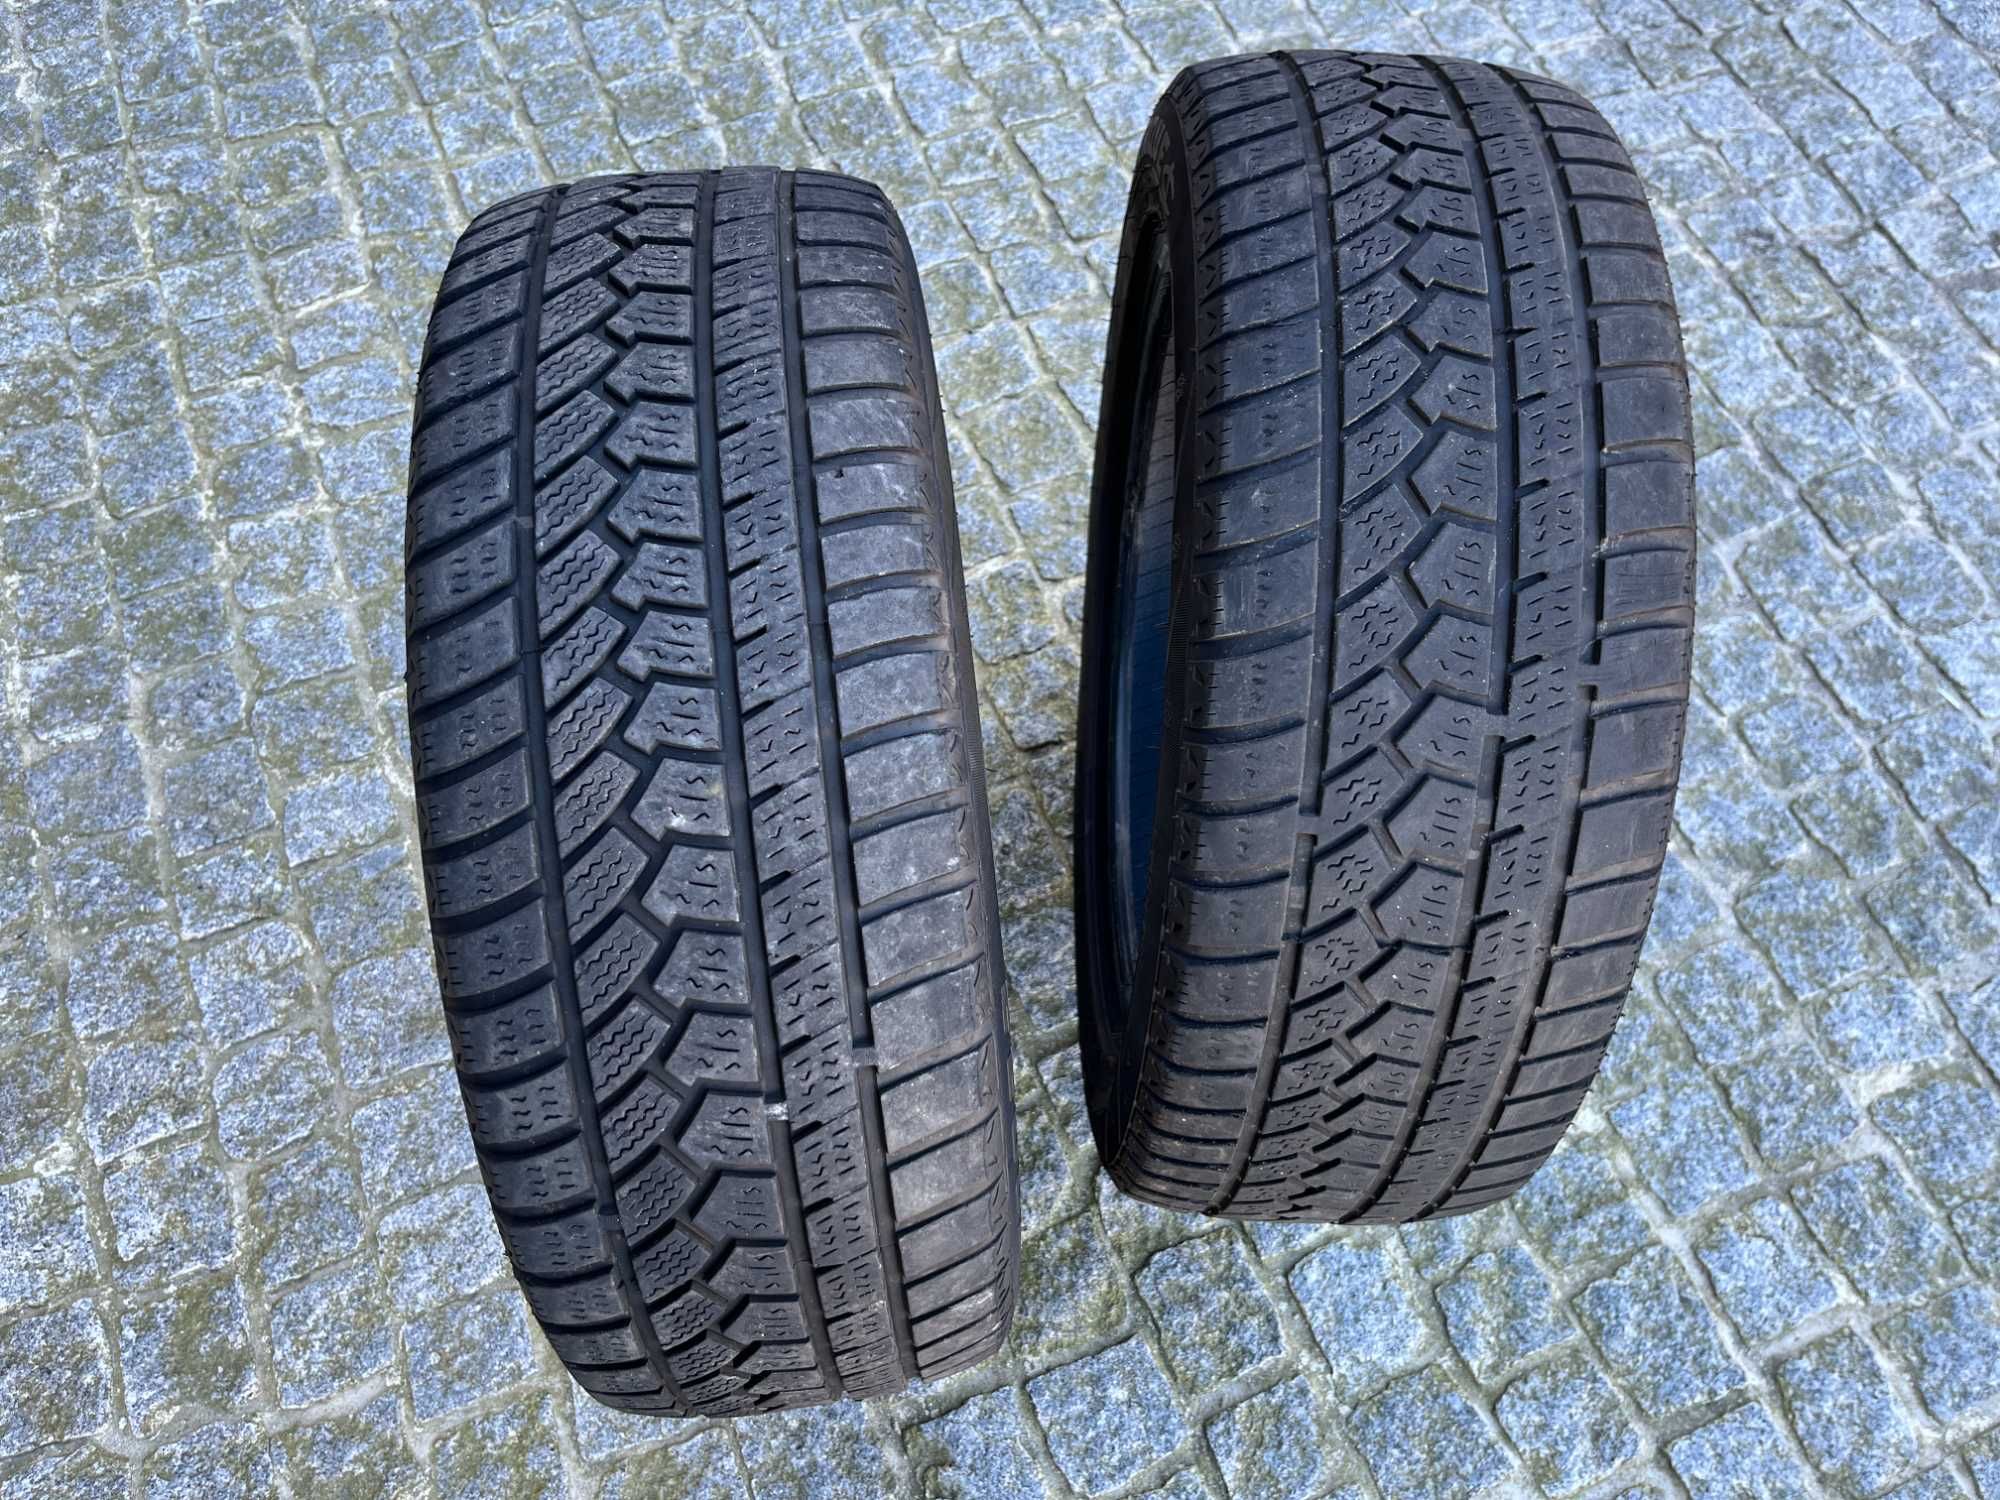 4 pneus de inverno (205/55R17) + 1 pneu de verão (195/55R16) +suplente